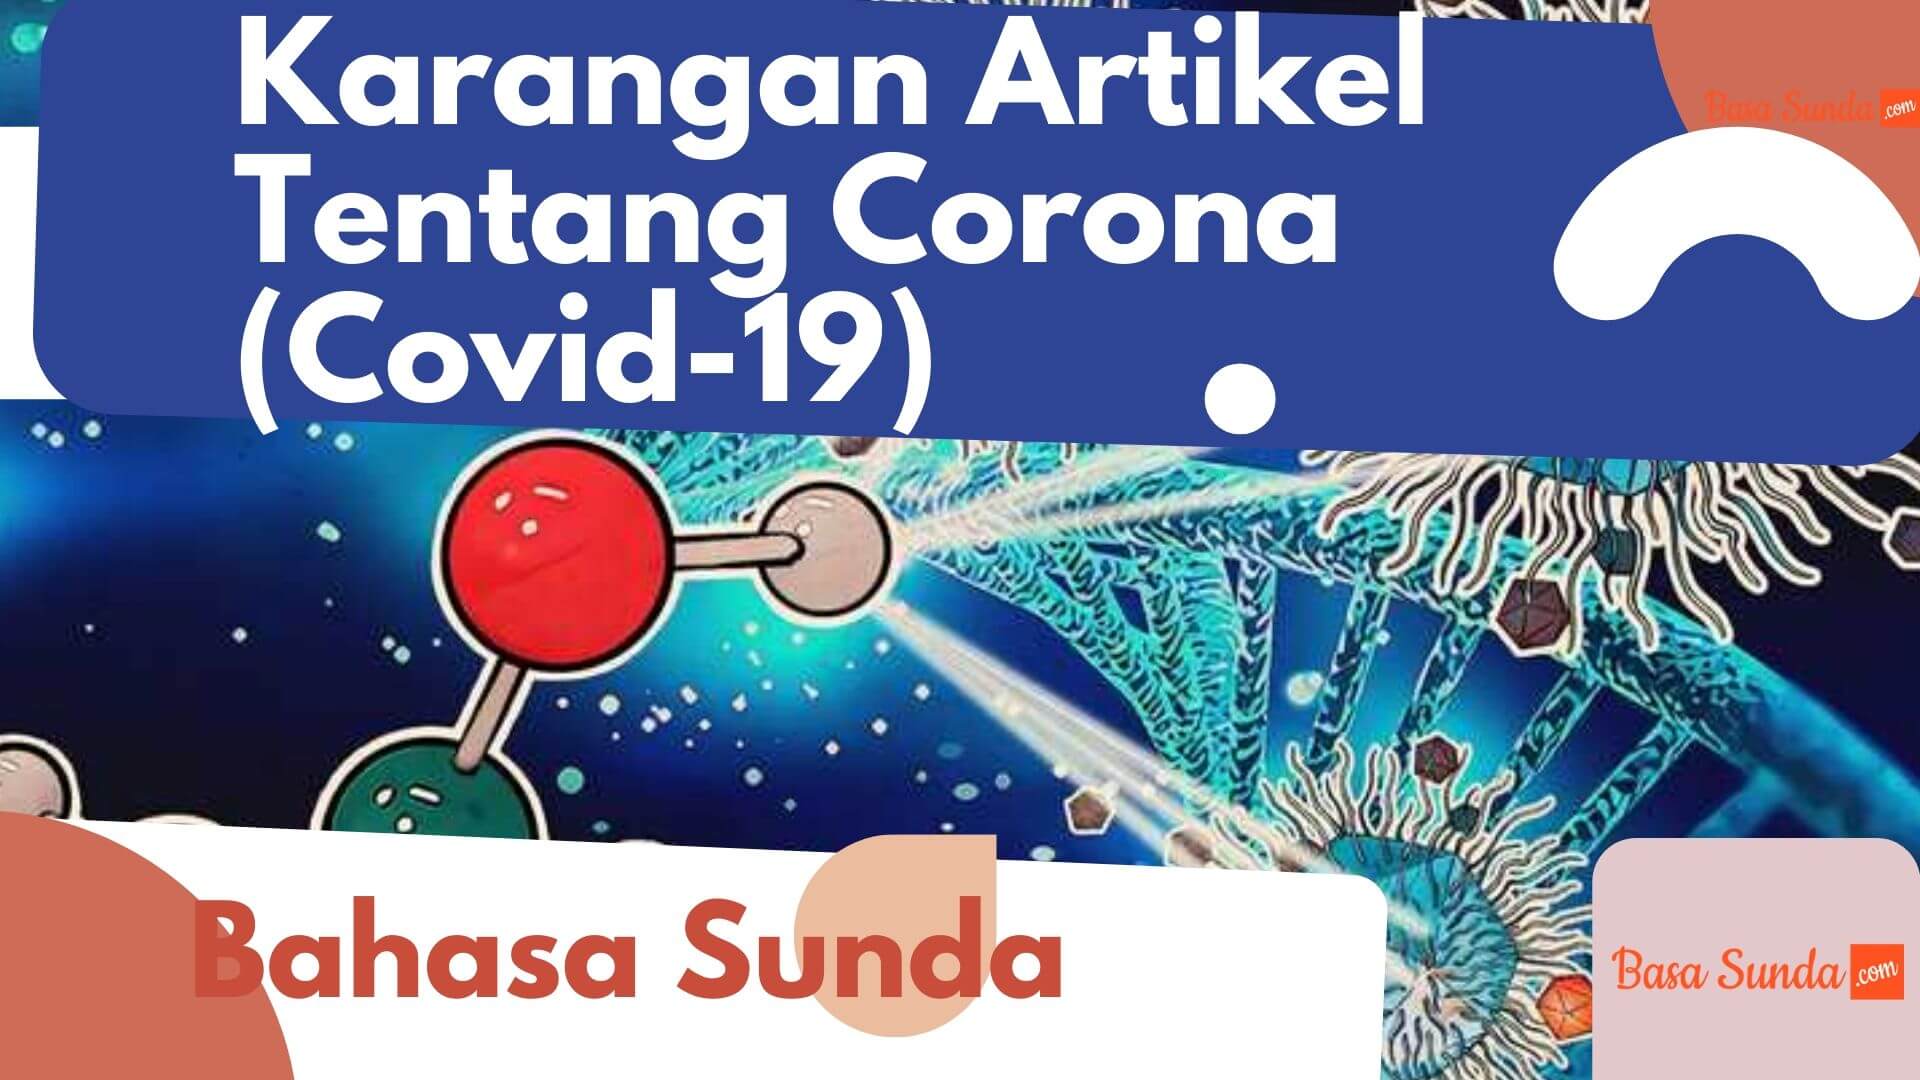 Karangan Artikel Tentang Corona atau Covid-19 Bahasa Sunda